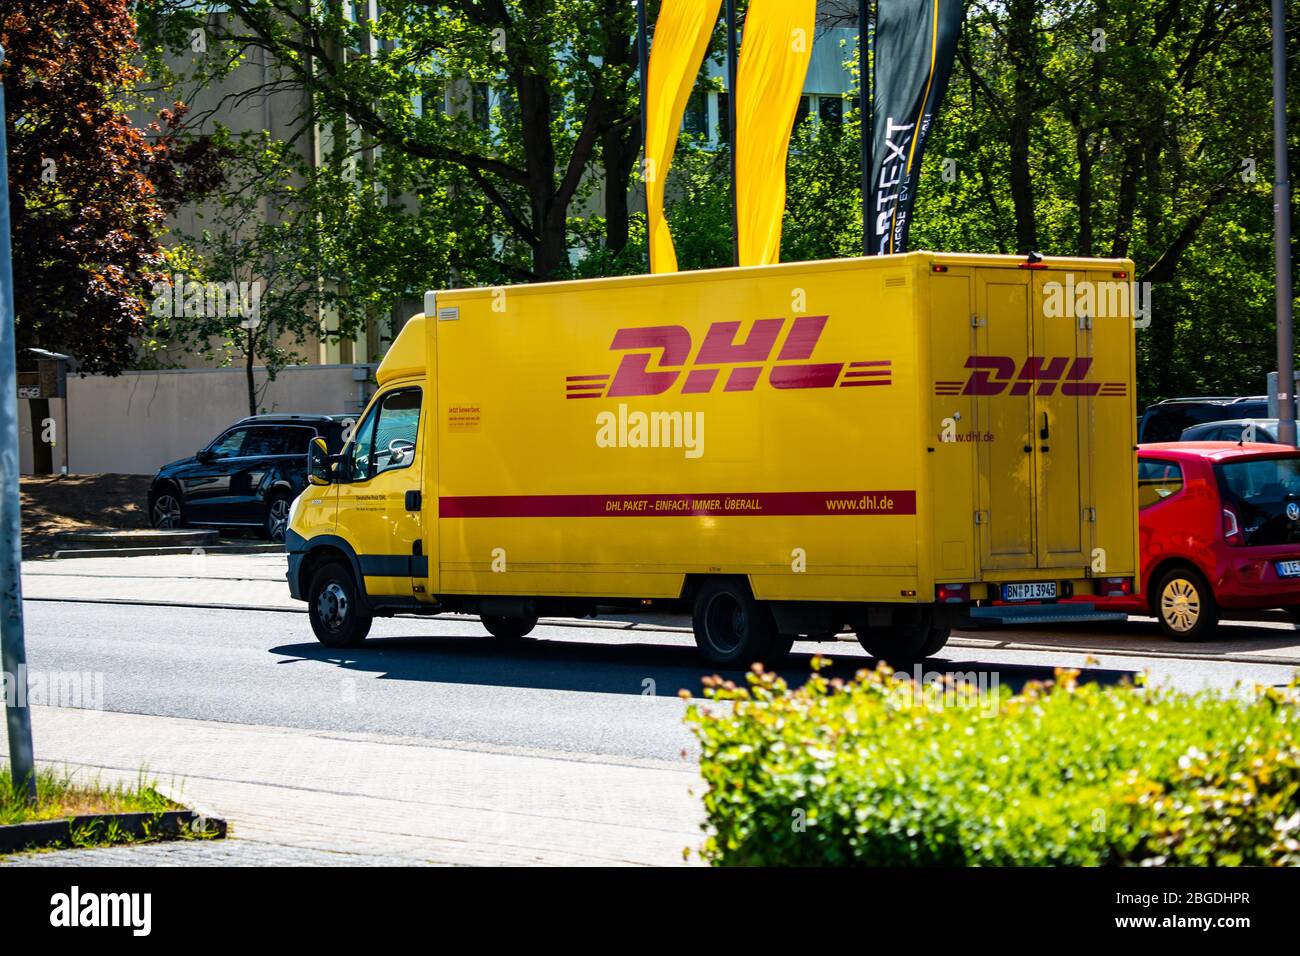 EIn Fahrzeug des Paketdienstleisters DHL liefert im Willicher Industriegebiet Pakete. Aktuell ist DHL wegen der Corona-Krise stark belastet. Stock Photo